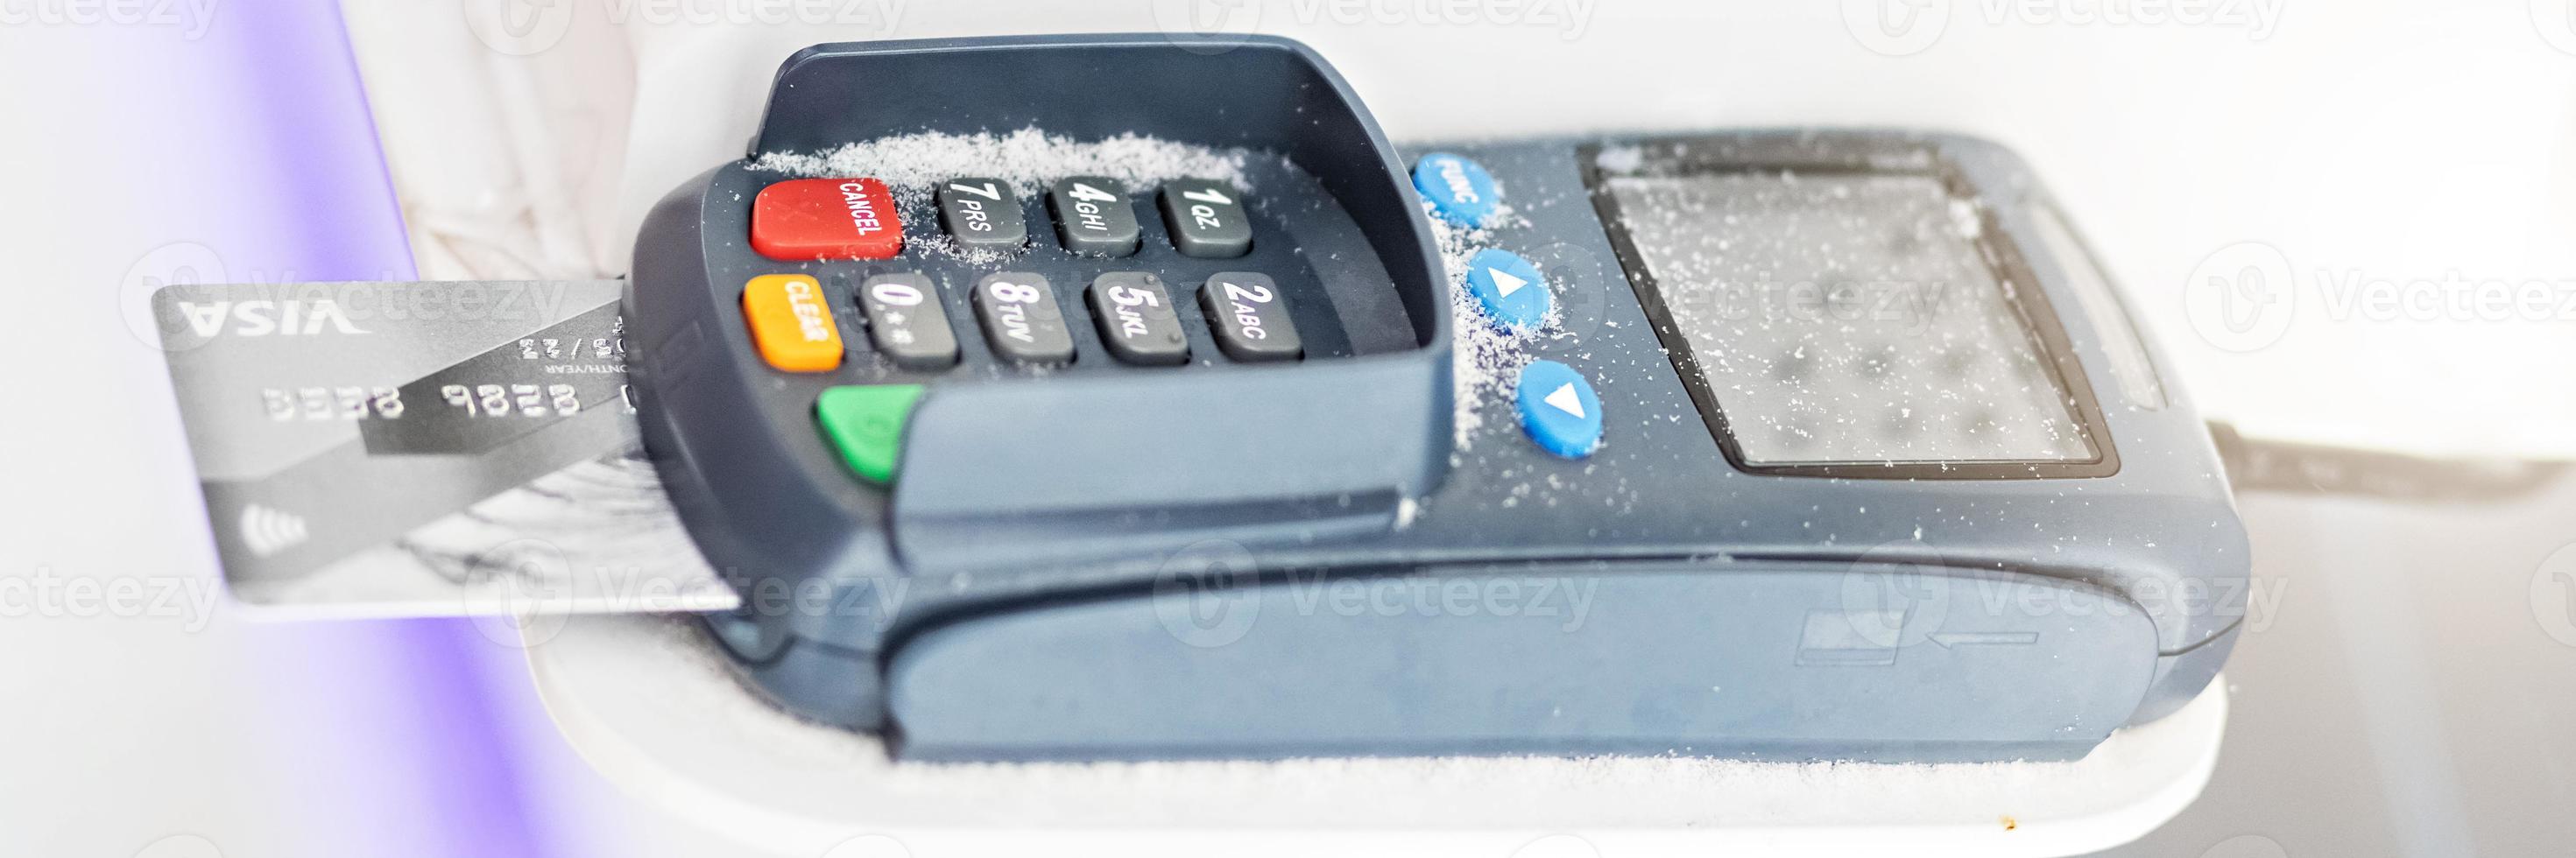 betalning med ett bankkreditkort via en betalningsterminal. banner foto